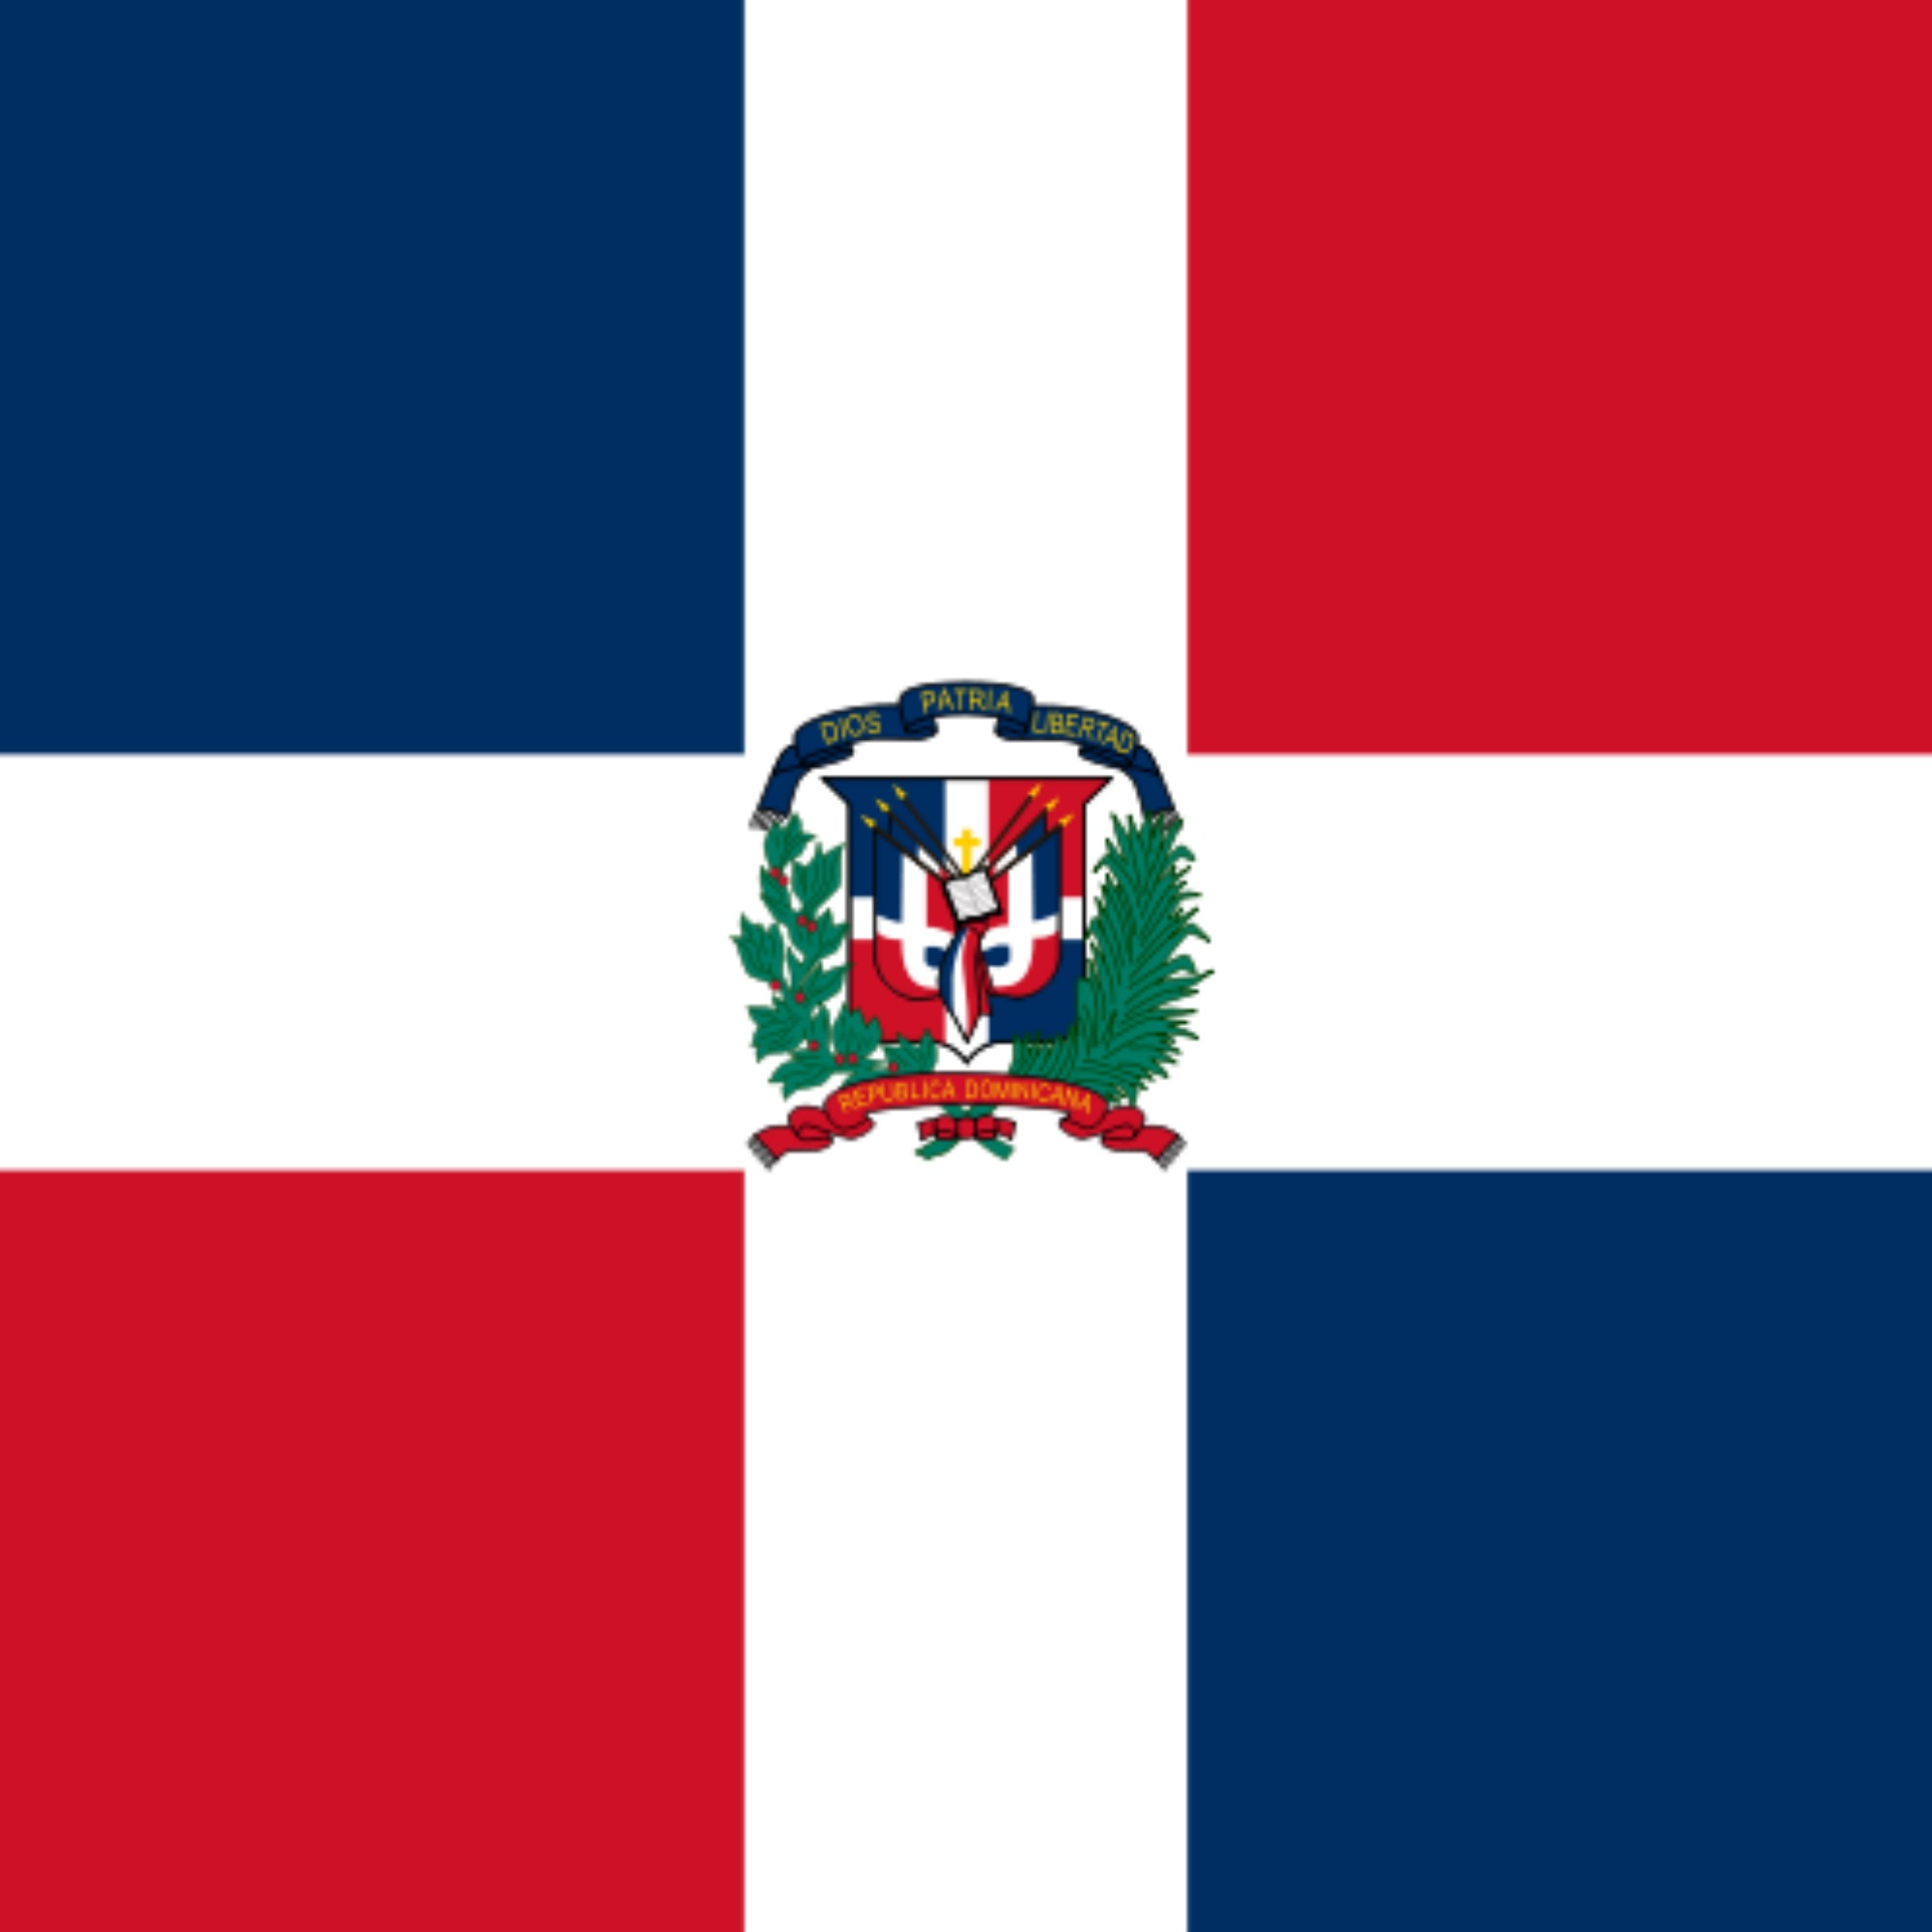 Consulat honorari de la República Dominicana (Alacant)